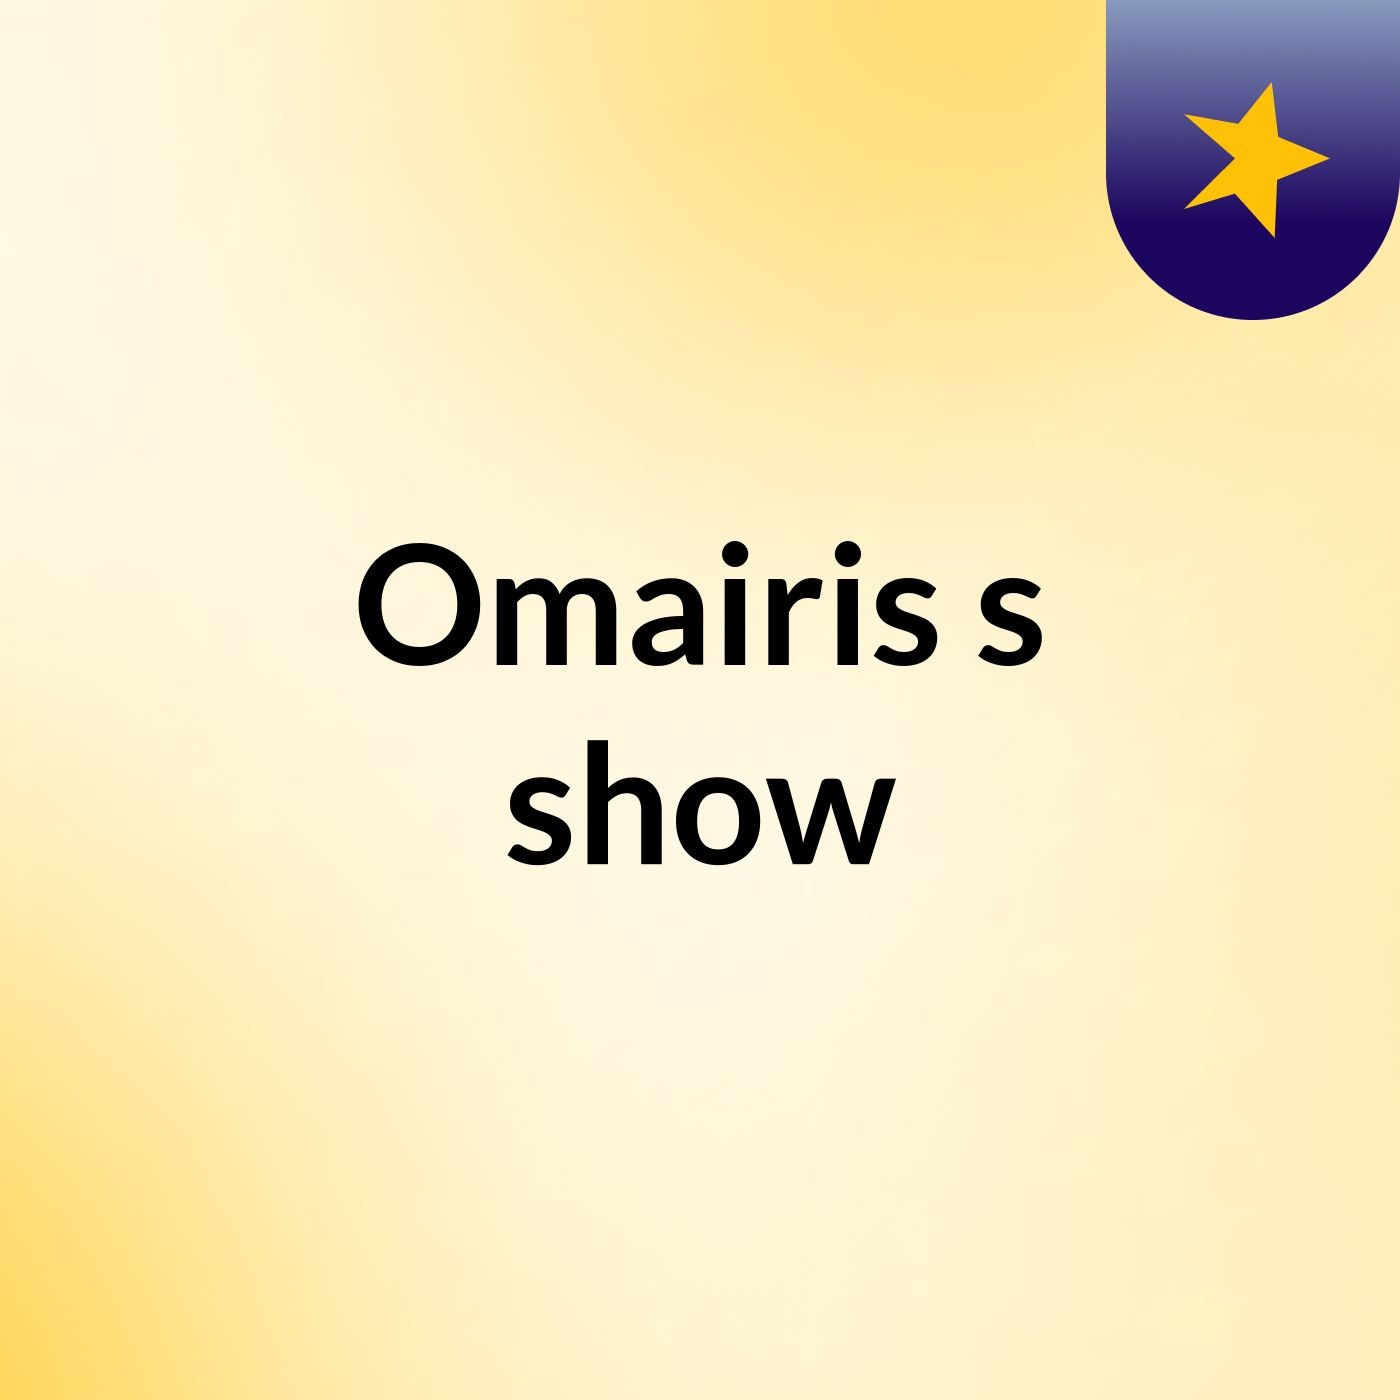 Omairis's show